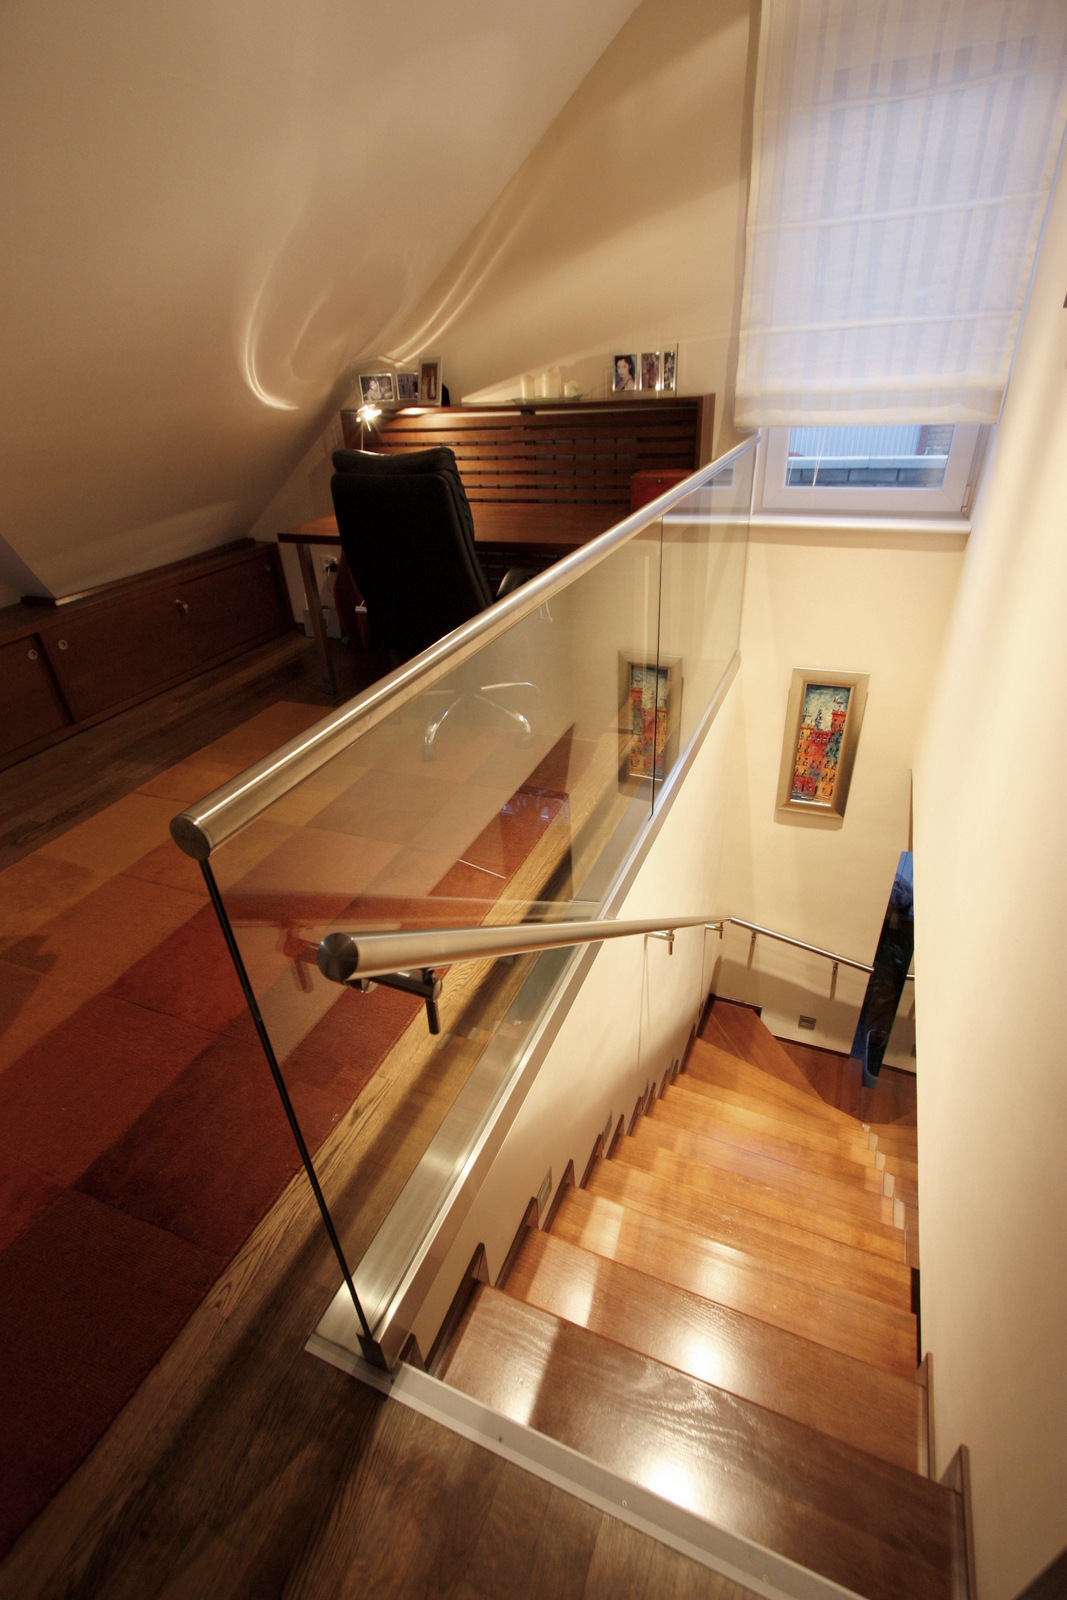 Lépcső / Stairs